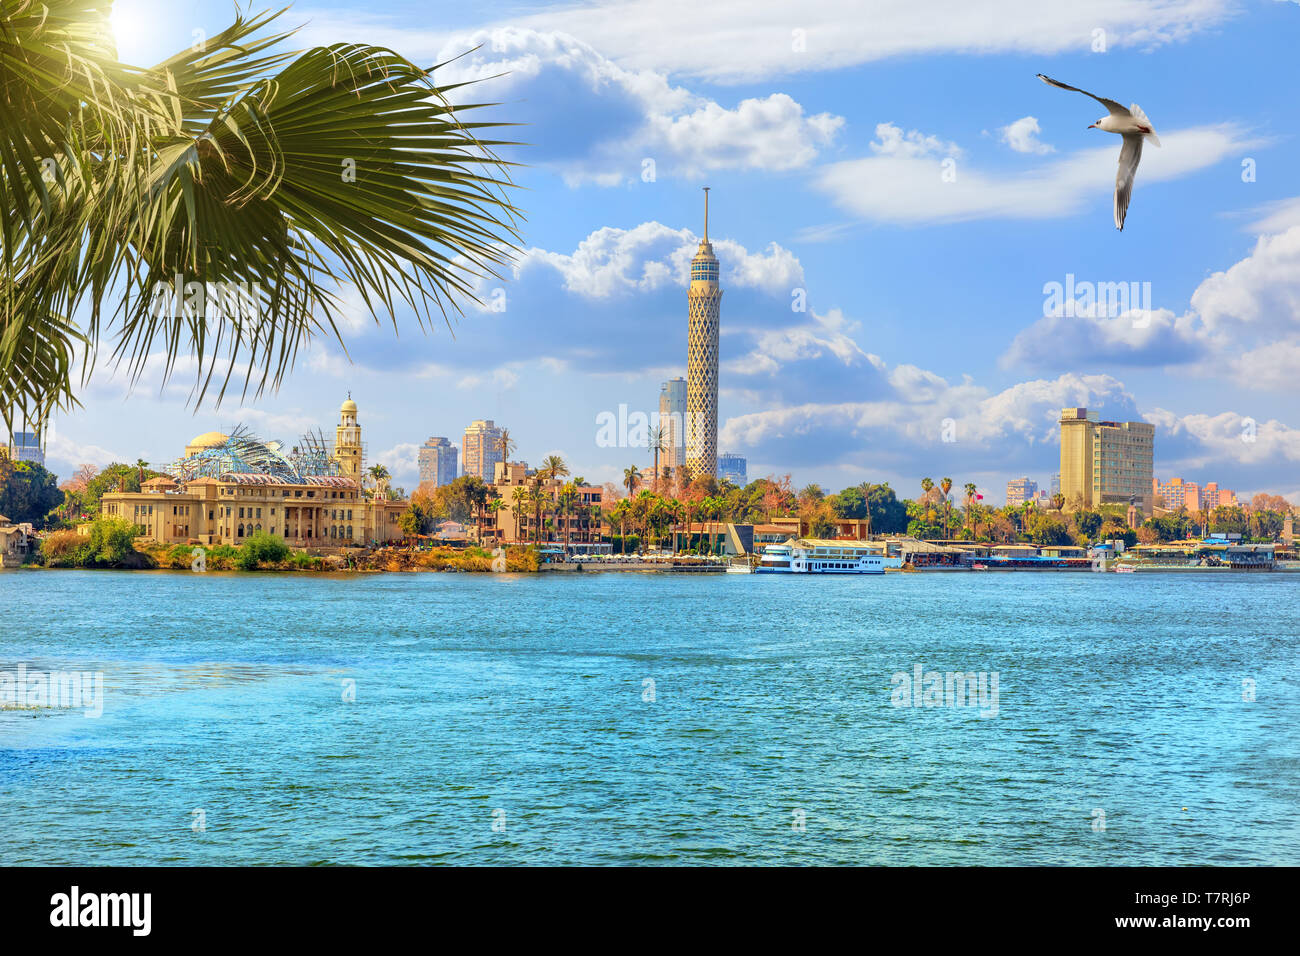 Der Kairo Tower, schöne Aussicht vom Nil, Ägypten Stockfoto